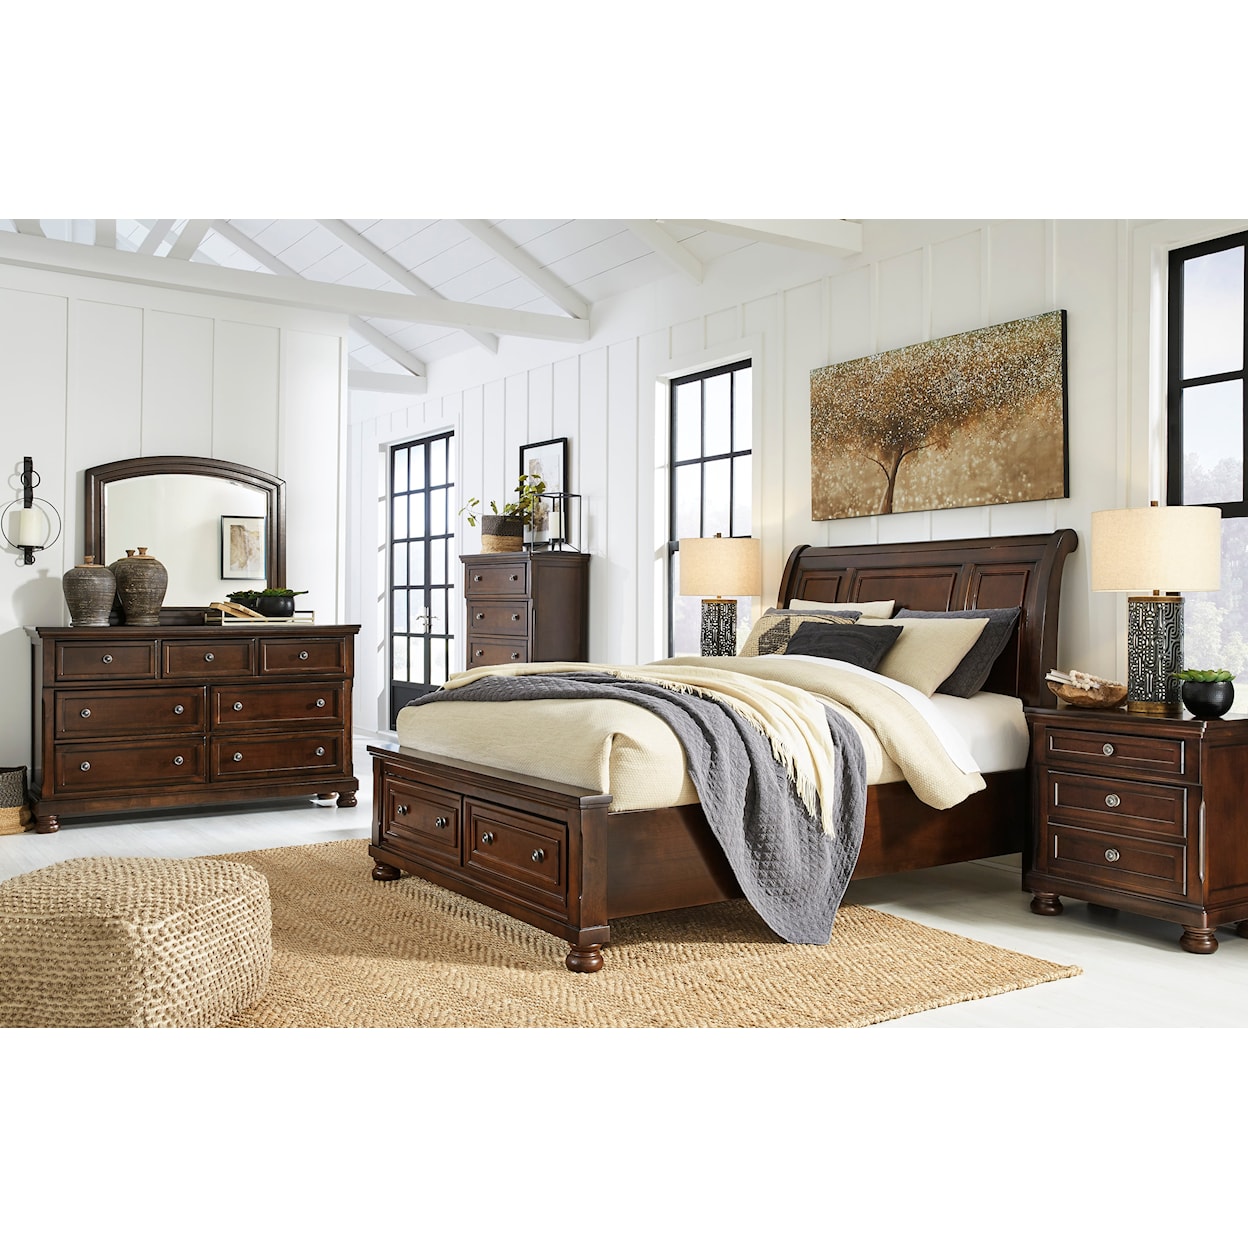 Ashley Furniture Porter Queen Storage Bed, Dresser, Mirror, Chest